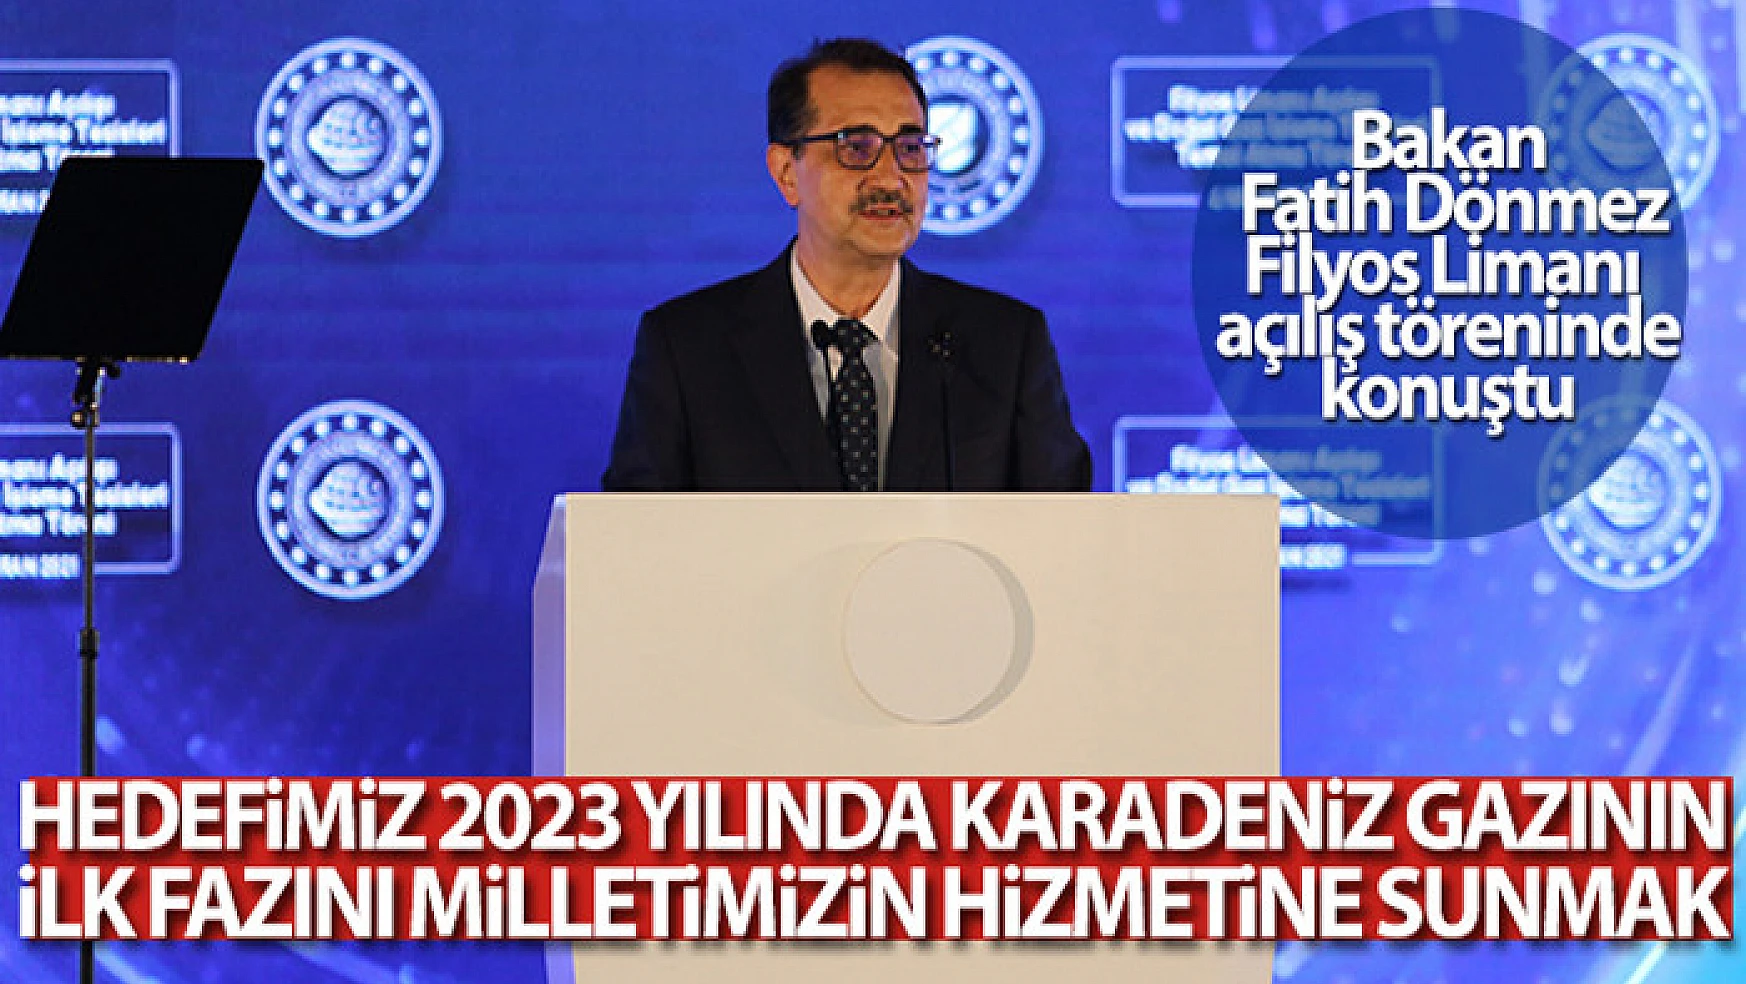 Bakan Dönmez: Hedefimiz 2023 yılında Karadeniz gazının ilk fazını milletimizin hizmetine sunmak